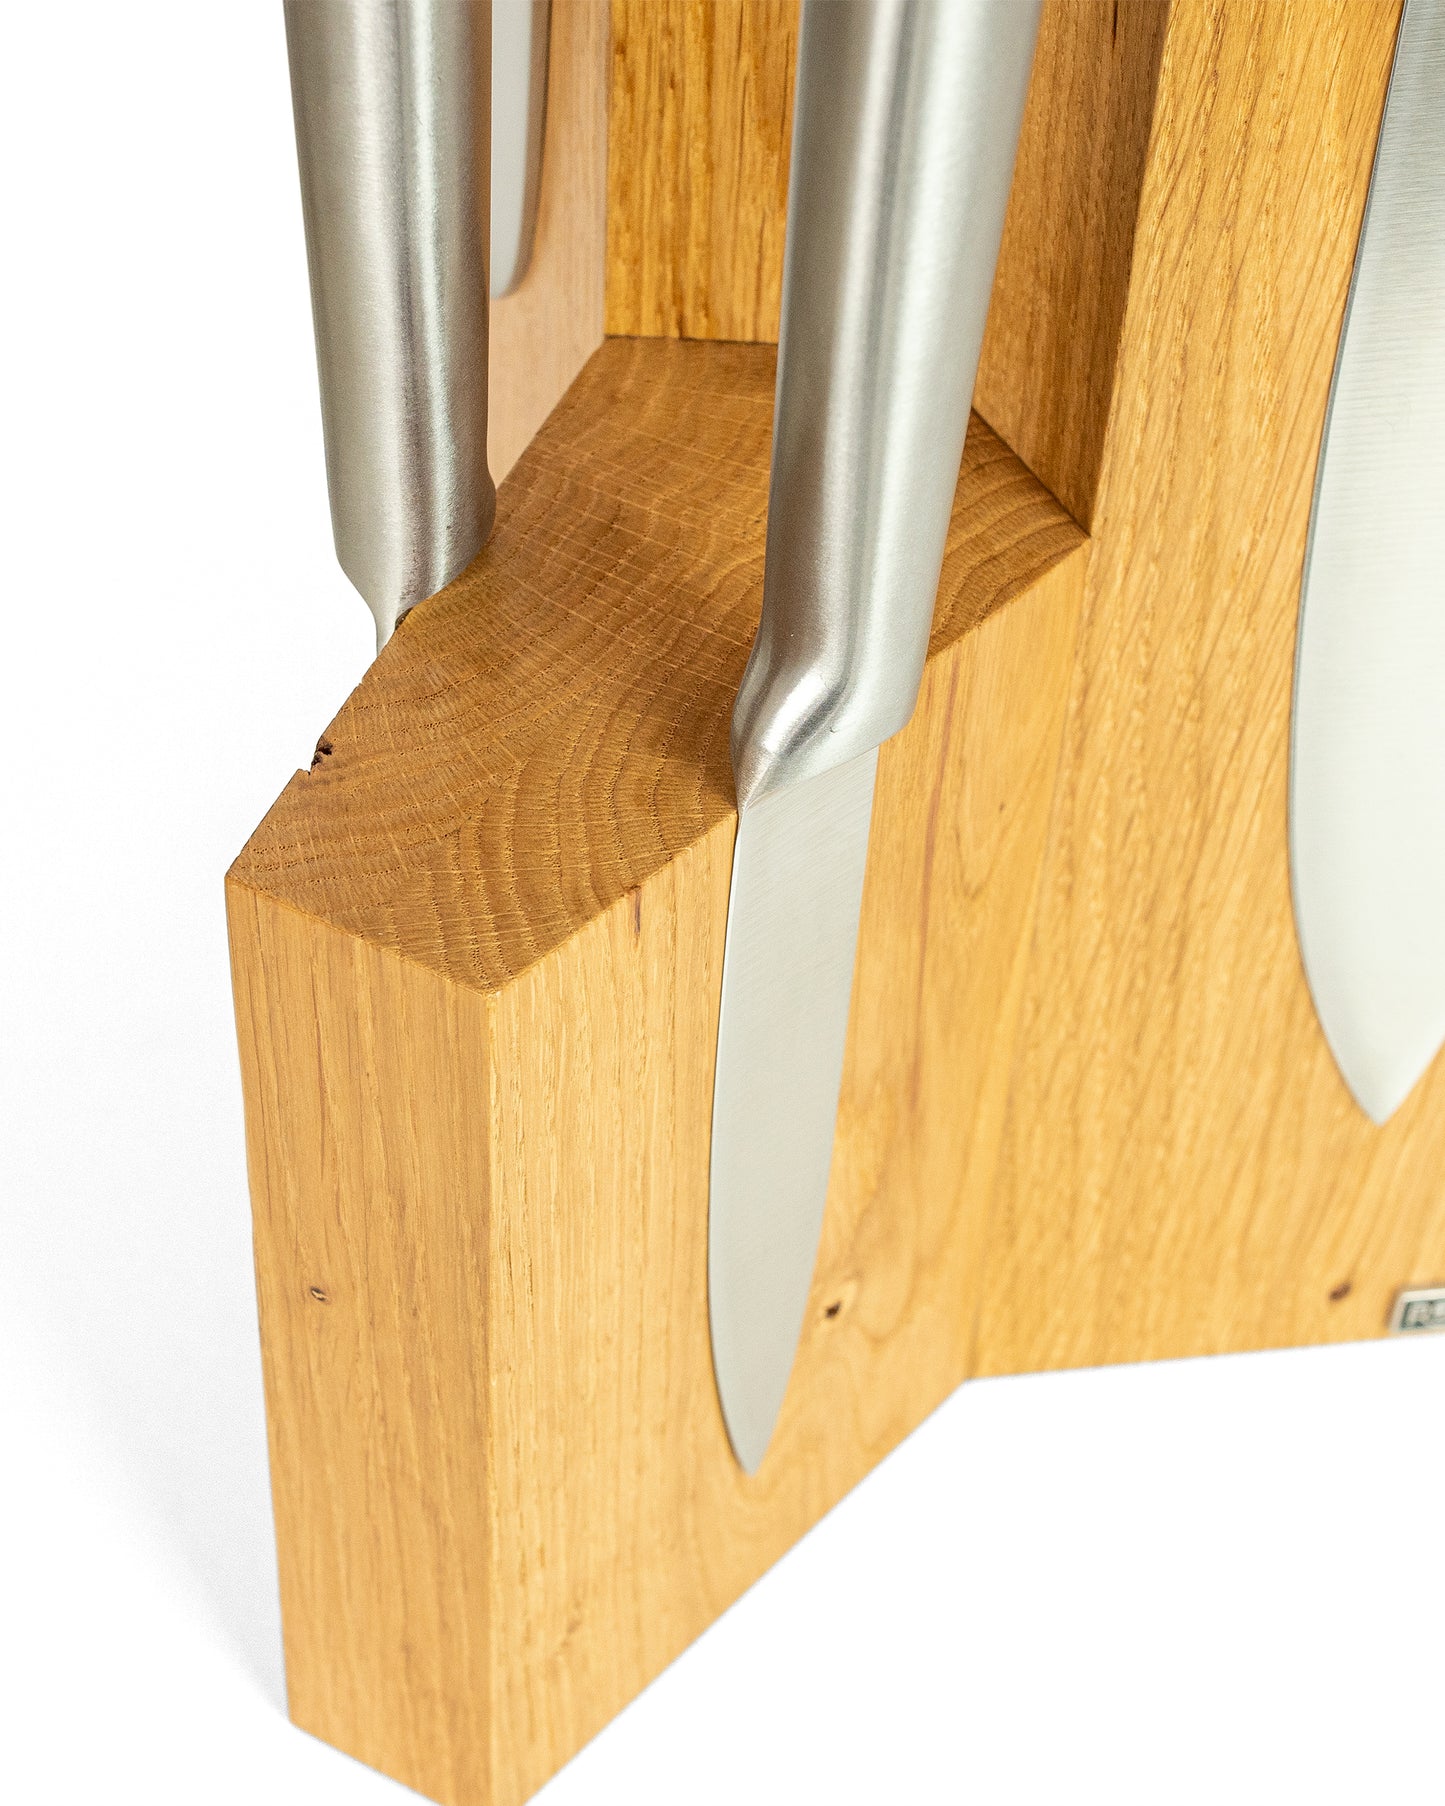 Magnetischer Messerblock Eiche:Gespiegelte Verleimung des Blocks:Die gespiegelte Verleimung ist das Highlight dieser Messerblöcke. Sie macht jeden Messerblock einzigartig und ist Zeugnis hochwertiger Handarbeit.